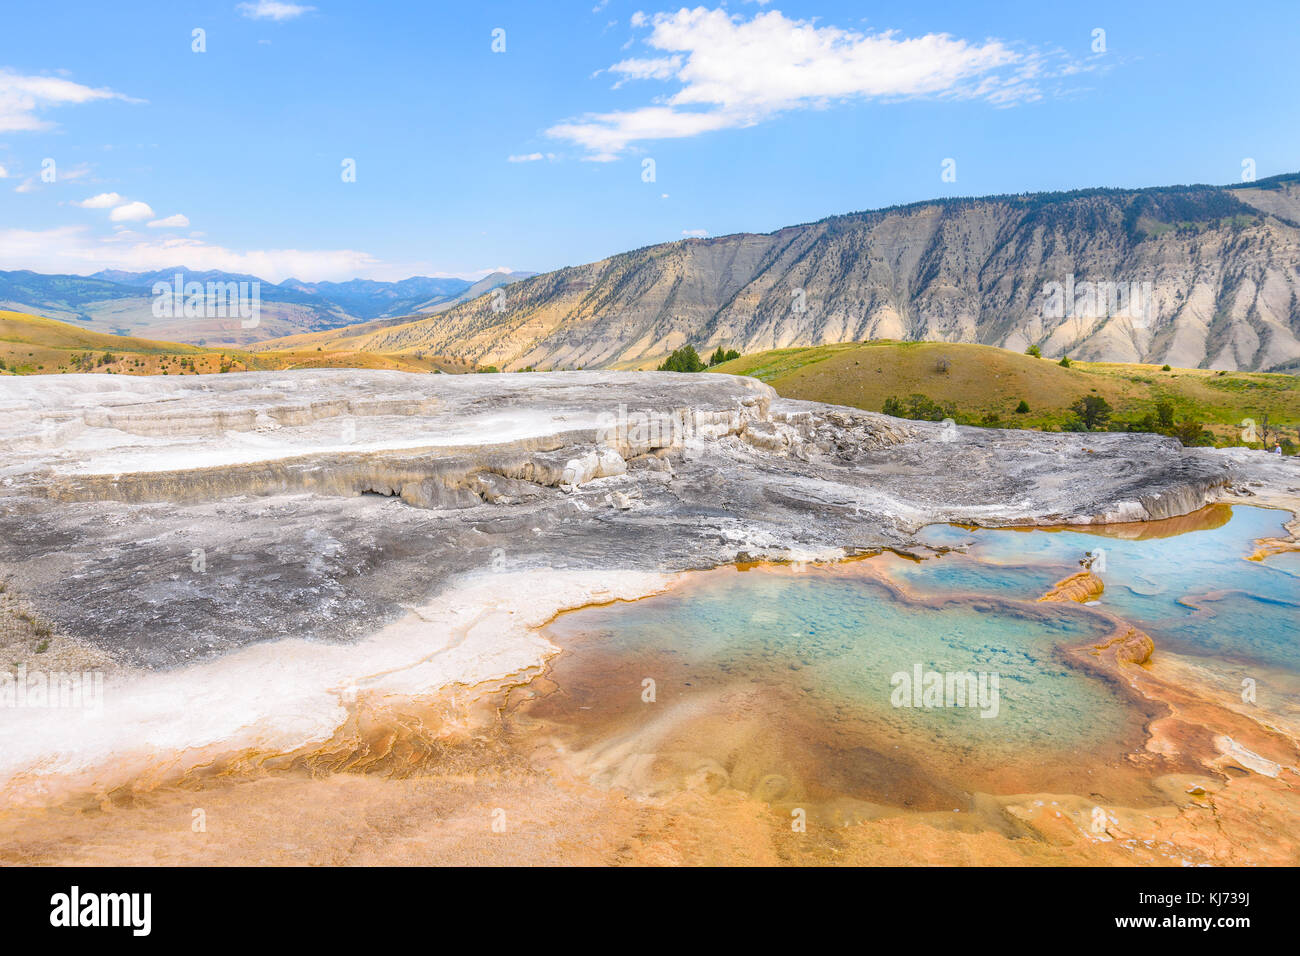 Minerali piscine calde del parco nazionale di Yellowstone. Mammoth Hot Springs area. Foto Stock